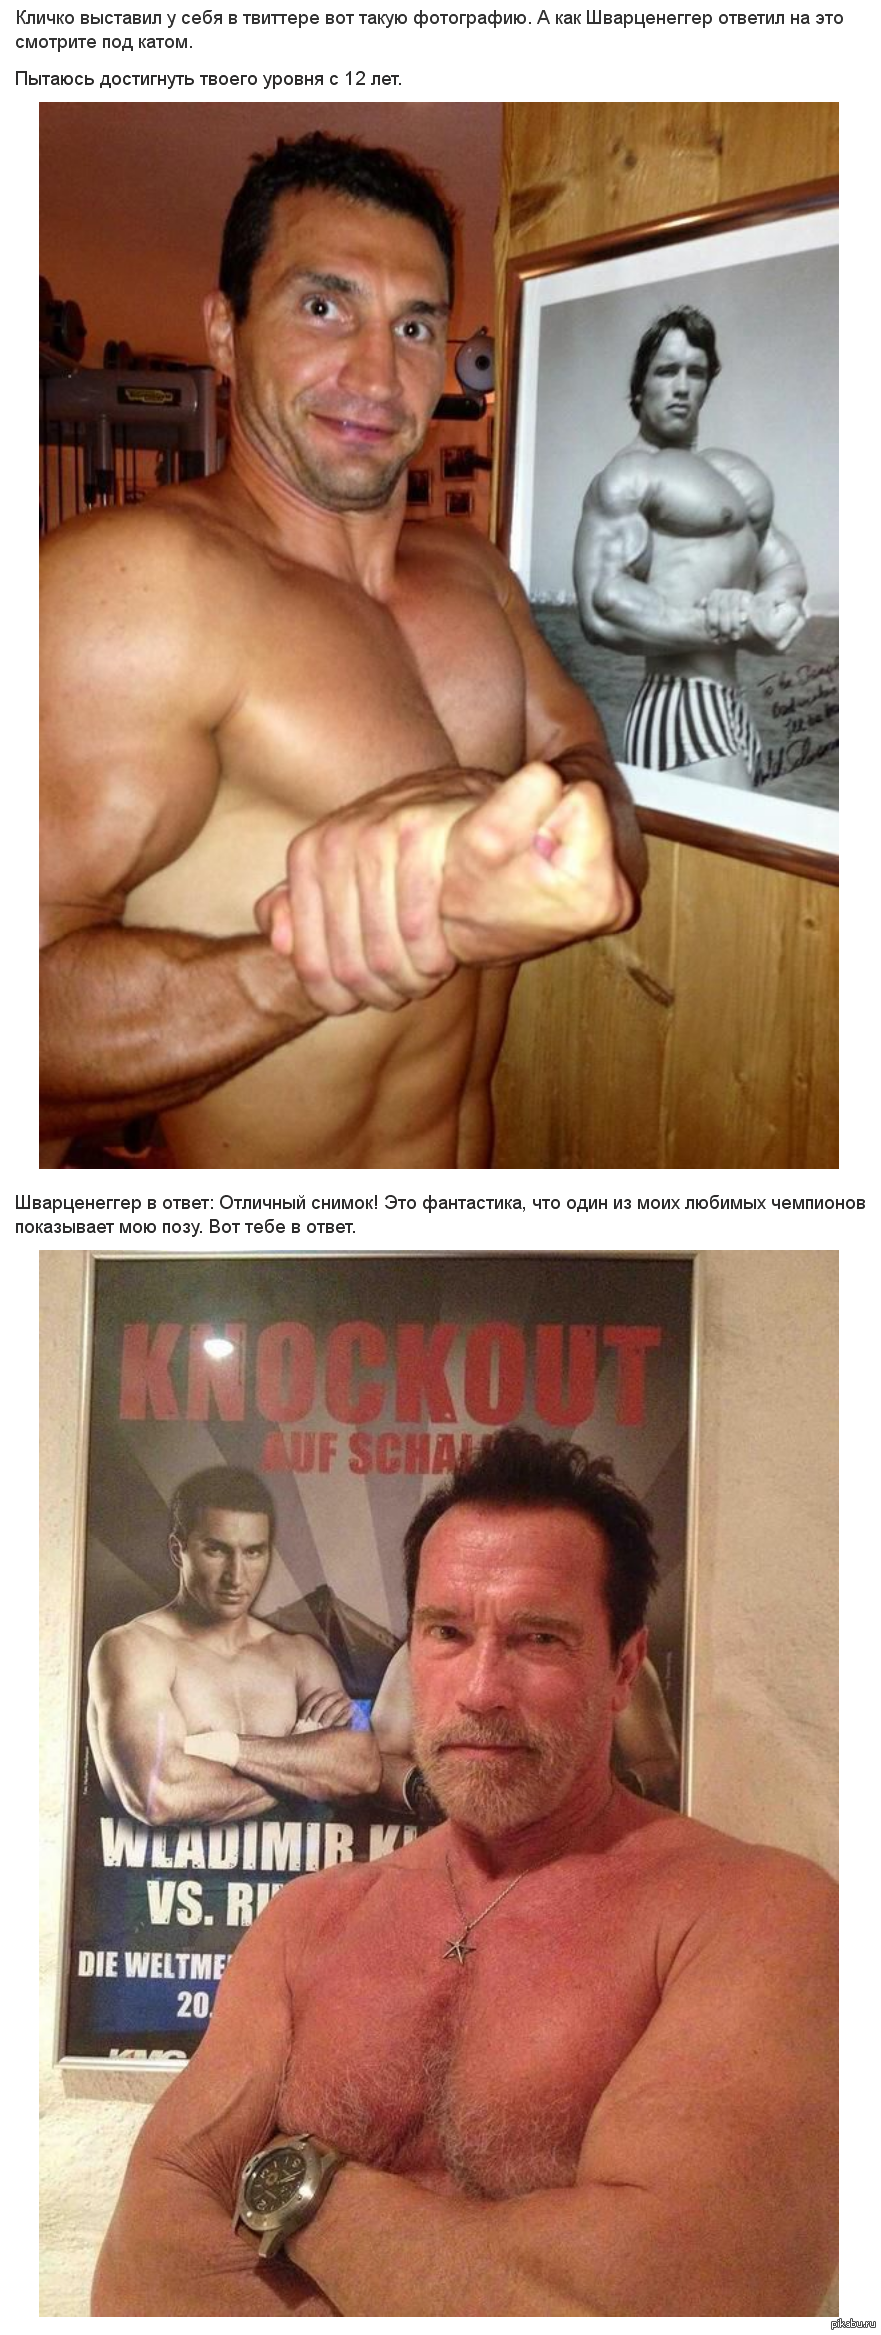 Klitschko and Schwarzenegger - Celebrities, The photo, Klitschko, Schwarzenegger